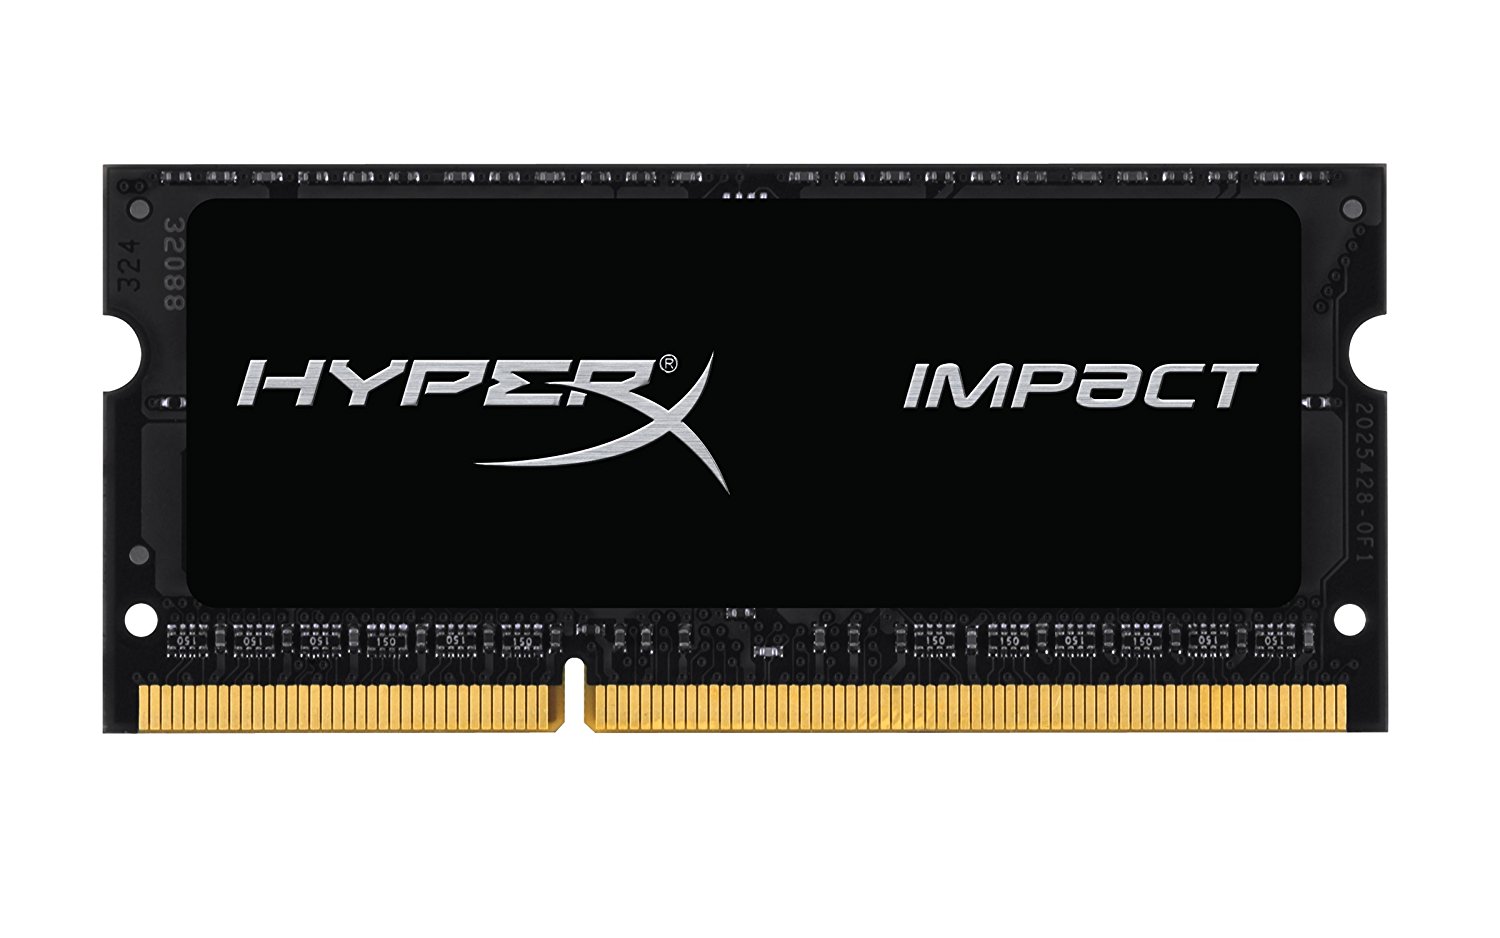 4GB 1866MHZ DDR3L HYPERX IMPAC